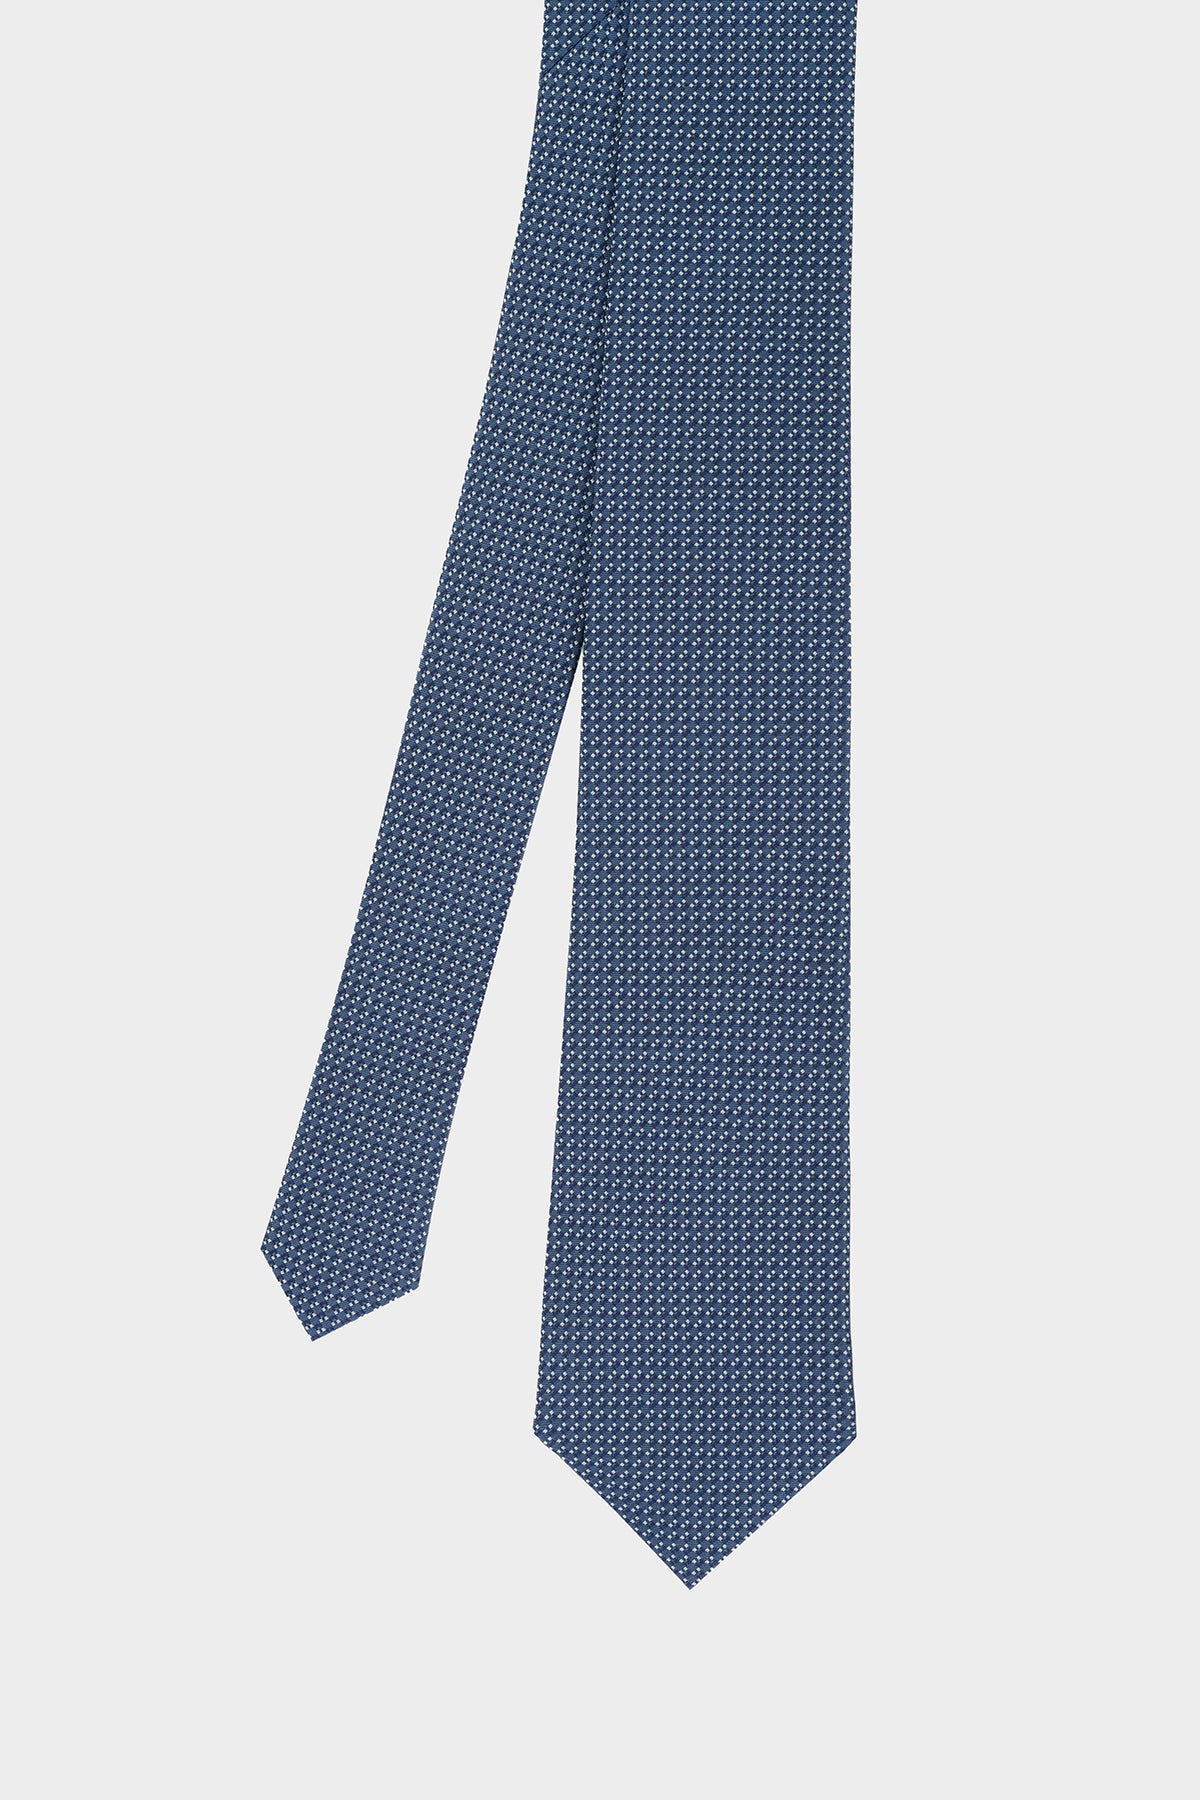 Cravate Octogone Bleu